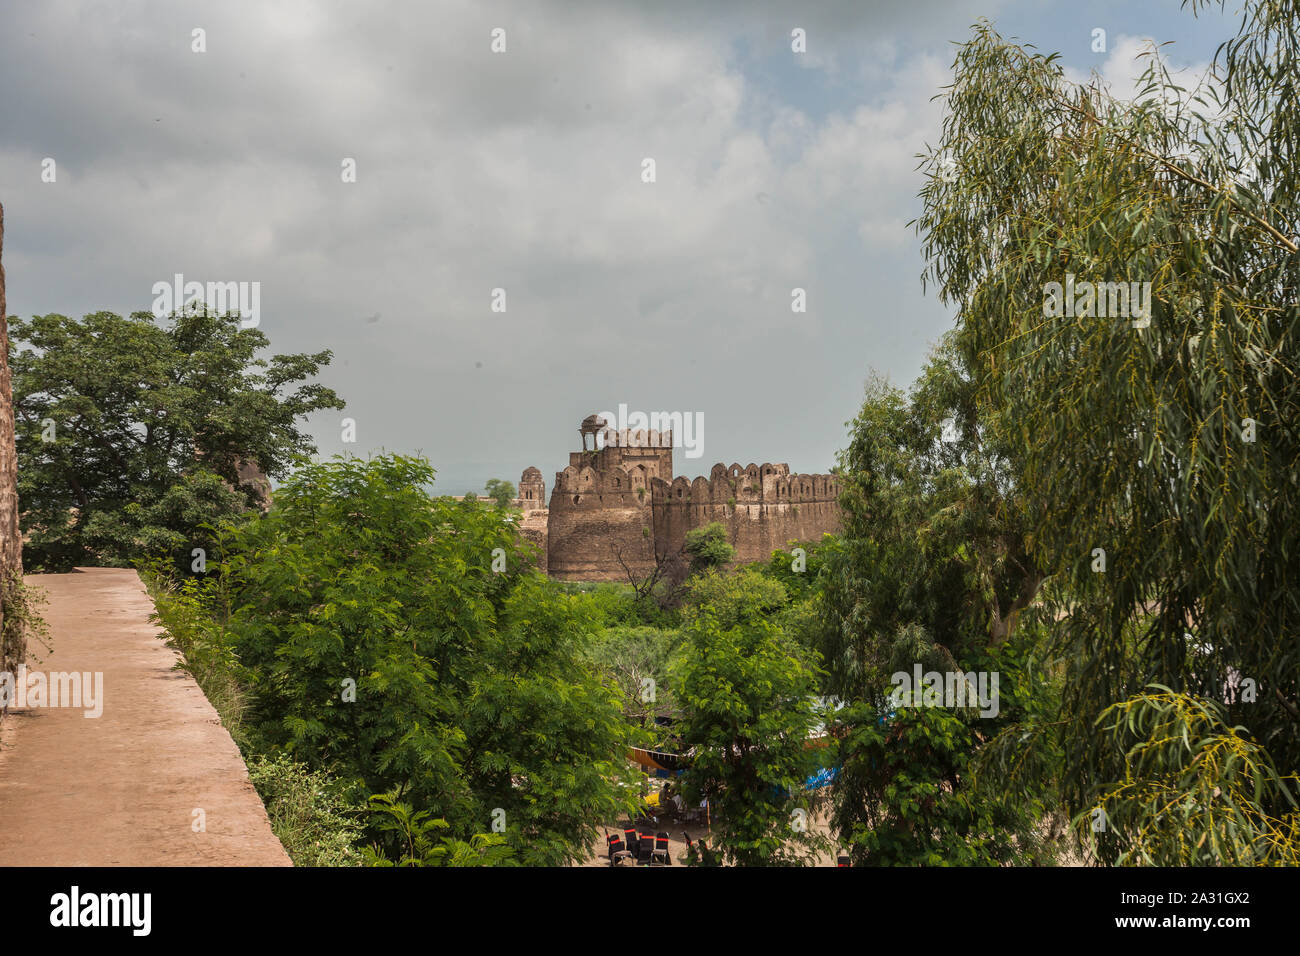 Rohtas Fort (Punjabi, Urdu: قلعہ روہتاس, romanisiert: Qilā Rohtās) ist eine Festung aus dem 16. Jahrhundert in der Nähe der Stadt Dina in Jhelum, Punjab. Stockfoto